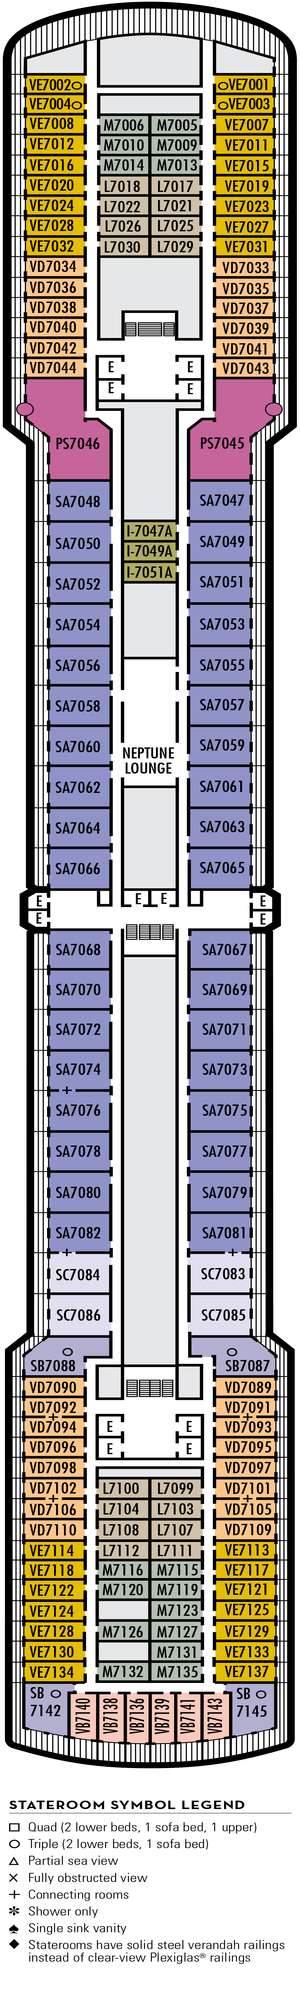 Deck plan for Noordam